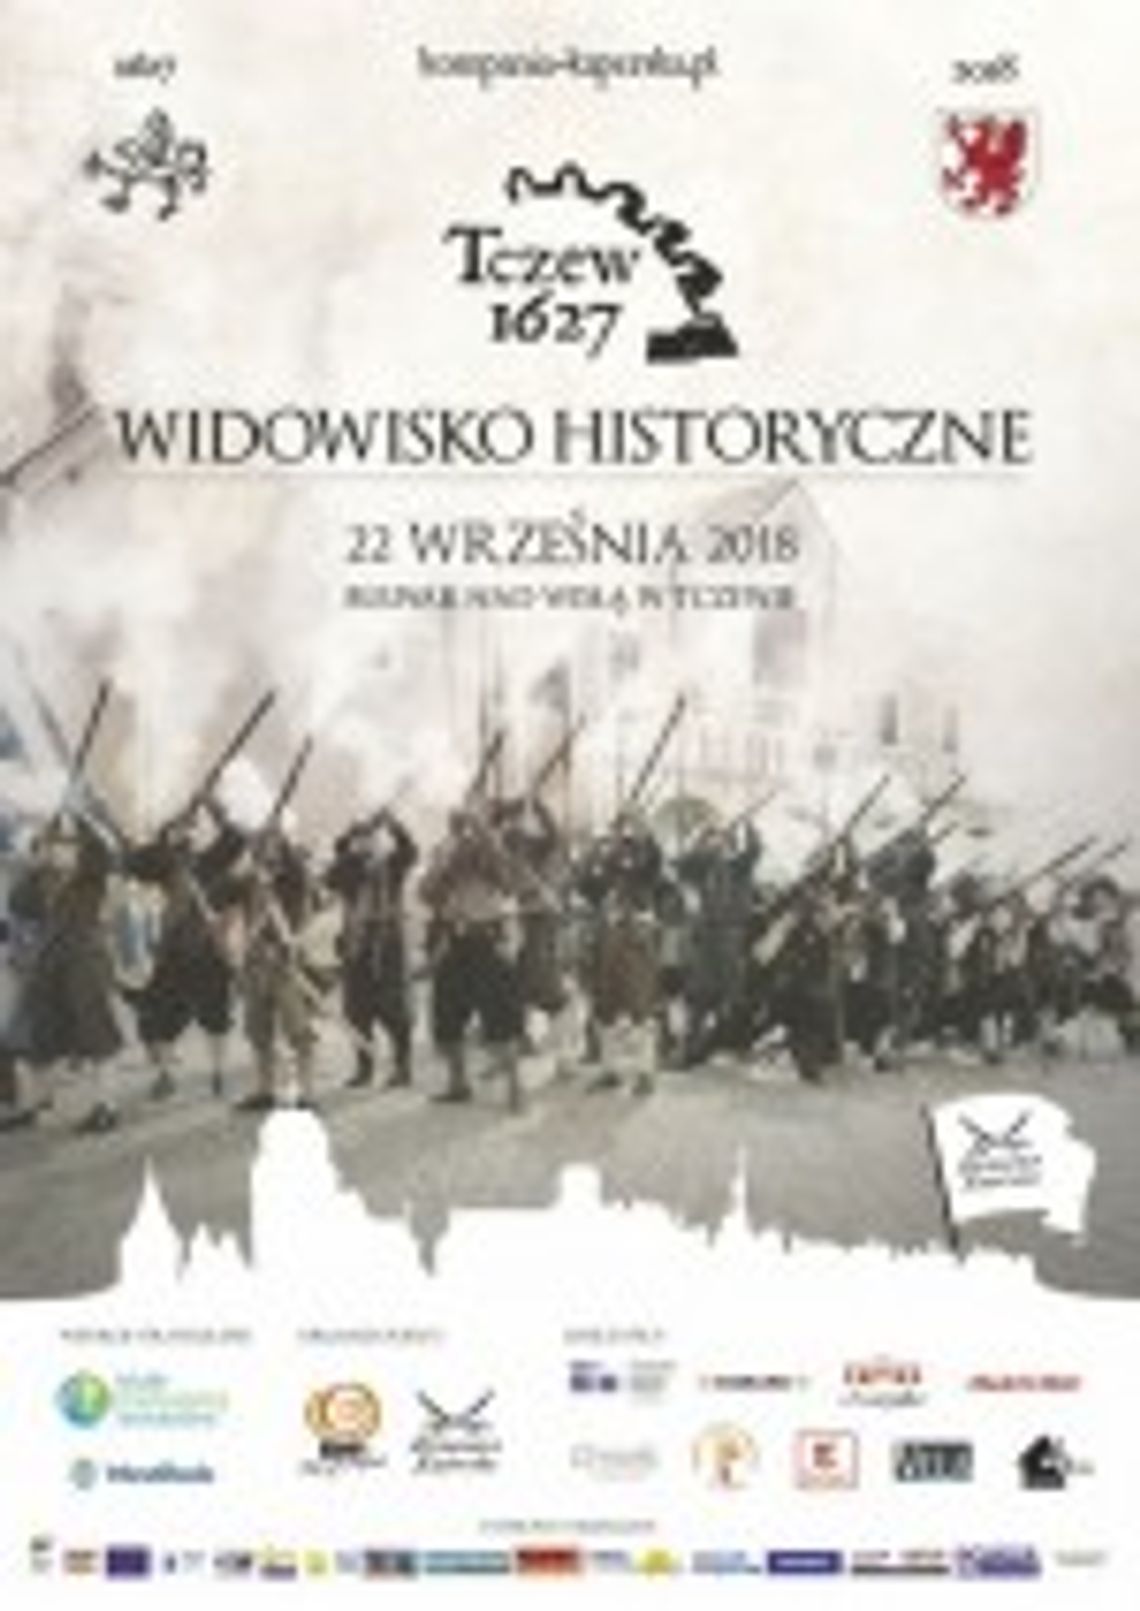 Widowisko historyczne "Tczew 1627".